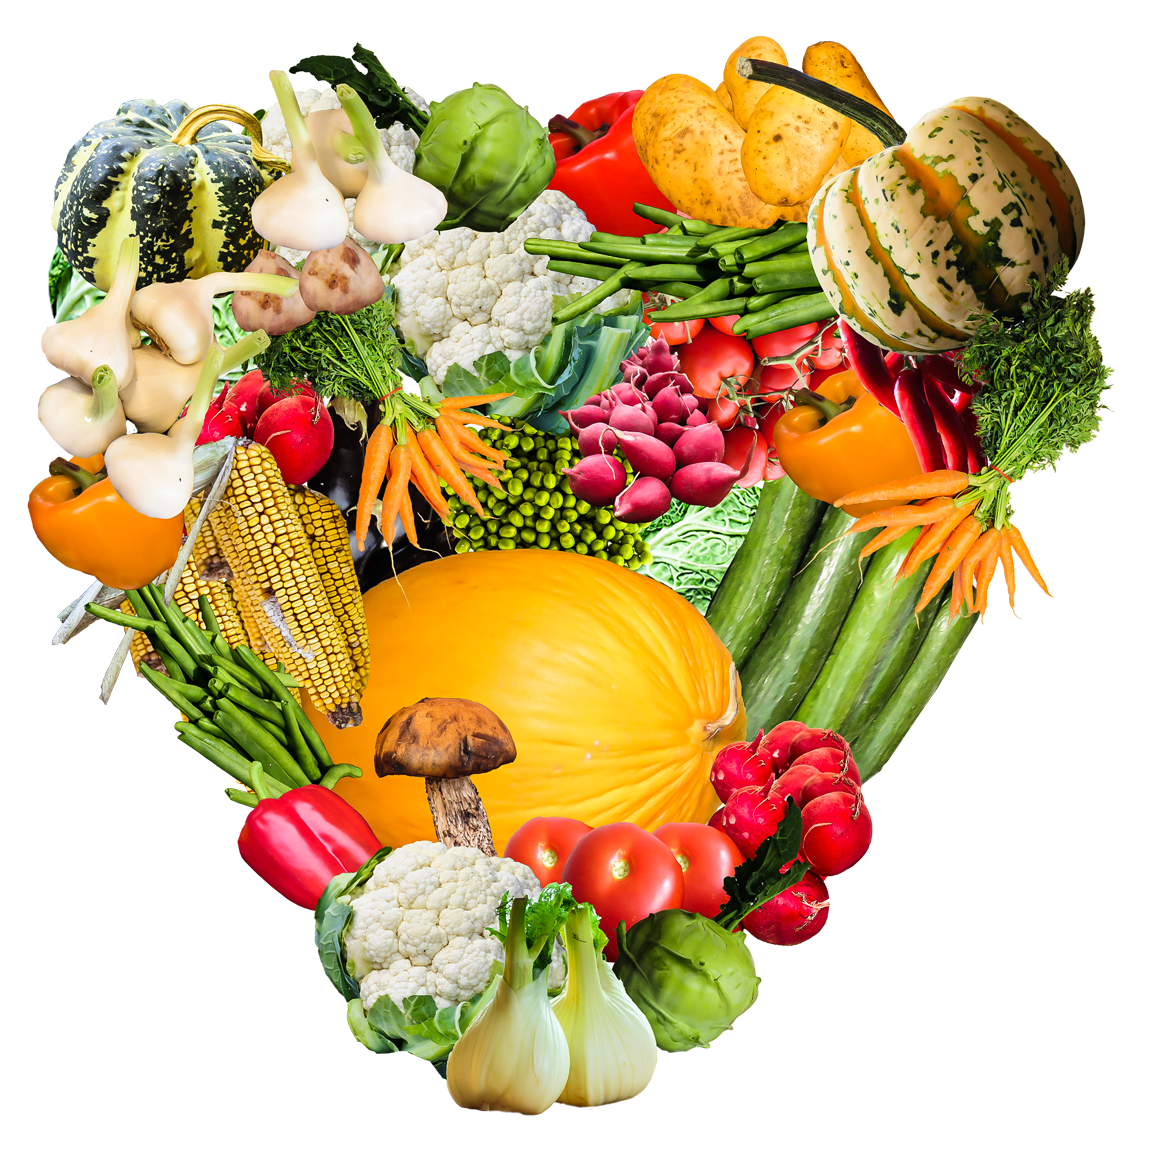 Buah-buahan dan sayuran segar Pic Pic